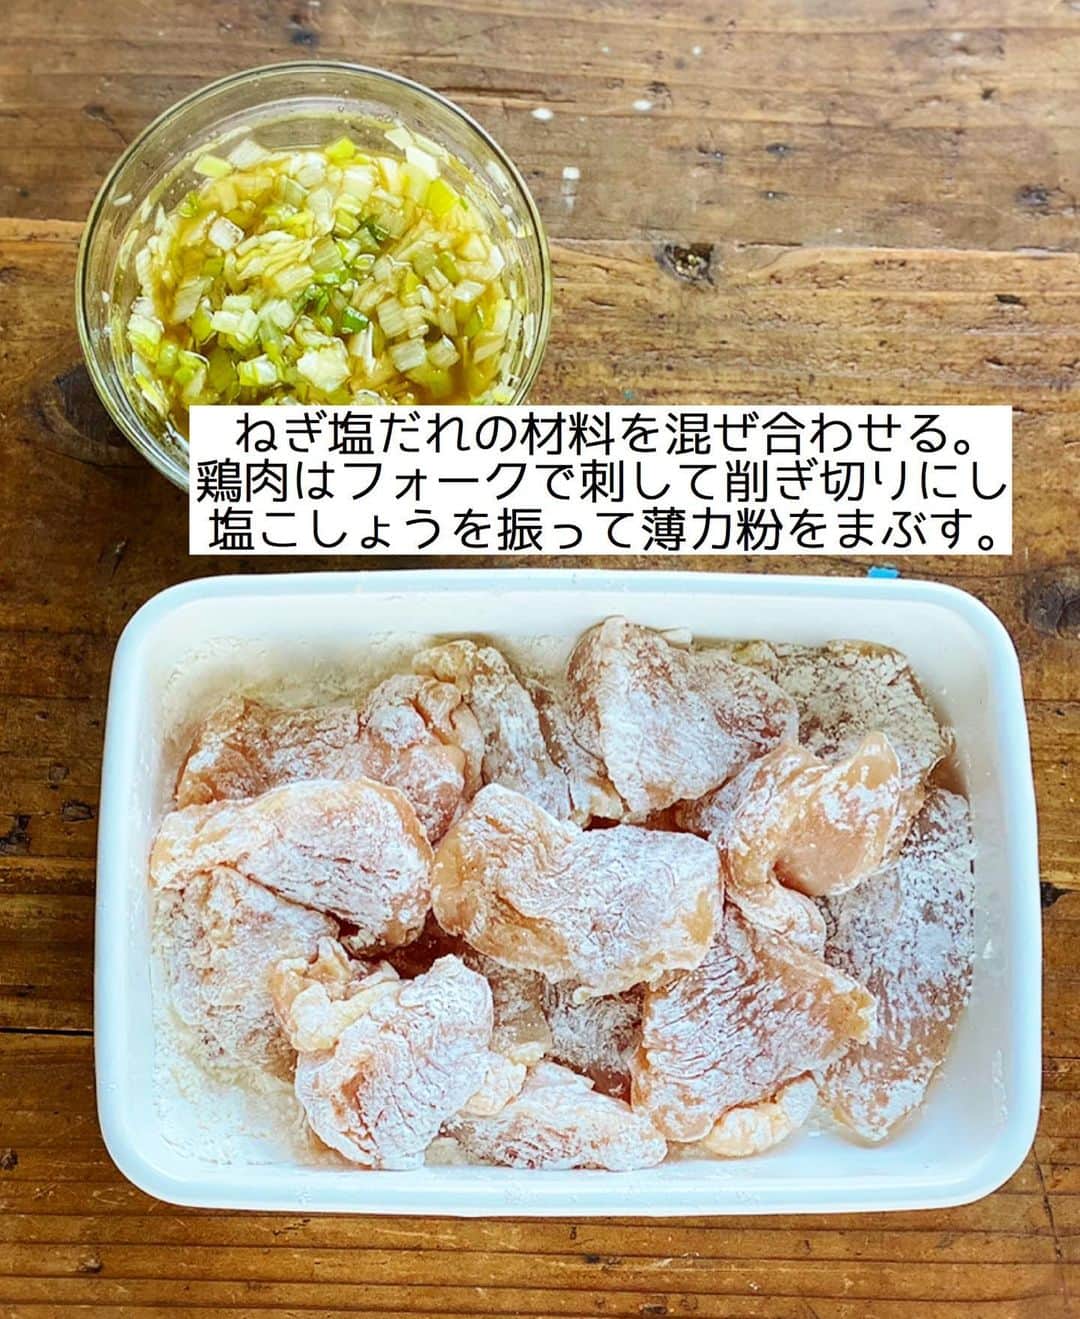 Mizuki【料理ブロガー・簡単レシピ】さんのインスタグラム写真 - (Mizuki【料理ブロガー・簡単レシピ】Instagram)「・﻿ 【#レシピ 】ーーーーーーーーー﻿ ♡鶏むね肉deねぎ塩チキン♡﻿ ーーーーーーーーーーーーーーー﻿ ﻿ ﻿ ﻿ おはようございます(*^^*)﻿ ﻿ 今日は鶏むね肉の節約おかず﻿ \\ ねぎ塩チキン // のご紹介です♡﻿ ﻿ パサつきがちな鶏むね肉も﻿ 少しの工夫でしっとり柔らか♩﻿ ねぎ塩だれはあっさりコクうま！﻿ 黒こしょうのパンチが効いて﻿ ごはんもお酒もすすみますよ〜♡﻿ ﻿ とっても簡単にできるので﻿ よかったらお試し下さいね(*´艸`)﻿ ﻿ ﻿ ﻿ ＿＿＿＿＿＿＿＿＿＿＿＿＿＿＿＿＿＿＿＿﻿ 【2人分】﻿ 鶏むね肉...大1枚(300g)﻿ 塩こしょう...少々﻿ 薄力粉...適量﻿ サラダ油...大1﻿ ●長ねぎ(みじん切り)...1/3本﻿ ●ごま油...大2﻿ ●塩...小1/3﻿ ●鶏がらスープ...ひとつまみ﻿ (好みで)粗挽き黒こしょう...適量﻿ ﻿ ﻿ 1.●を混ぜ合わせてねぎ塩だれを作る。鶏肉は全体をフォークで刺して1cm厚さの削ぎ切りにし、塩こしょうを振って薄力粉をまぶす。﻿ 2.フライパンにサラダ油を中火で熱して鶏肉を焼く。焼き色が付いたら裏返し、蓋をして弱めの中火で3分蒸し焼きにする。﻿ 3.器に2を盛り、ねぎ塩だれをかけ、黒こしょうを振る。﻿ ￣￣￣￣￣￣￣￣￣￣￣￣￣￣￣￣￣￣￣￣﻿ ﻿ ﻿ ﻿ ﻿ 《ポイント》﻿ ♦︎鶏もも肉で作っても◎﻿ ♦︎仕上げにレモンを絞っても美味しいです♩﻿ ﻿ ﻿ ﻿ ﻿ ﻿ ﻿ ﻿ ﻿ 📕新刊発売中📕﻿ 【ラクしておいしい！#1品晩ごはん 】﻿ ￣￣￣￣￣￣￣￣￣￣￣￣￣￣￣￣￣﻿ 私たちだってヘトヘトな日がある•••﻿ 毎日何品も作っていられない•••﻿ もうごはんに悩みたくない😢﻿ そんな時、1品ごはんはいかがでしょう？﻿ というご提案です✨﻿ ﻿ 【1品ごはん】は﻿ 副菜いらずで全てがシンプル！﻿ ￣￣￣￣￣￣￣￣￣￣￣￣￣￣￣￣￣￣﻿ 一品つくるだけでいいから﻿ 献立を考えなくてよし！﻿ ￣￣￣￣￣￣￣￣￣￣￣￣￣￣￣￣￣￣﻿ 悩まない、疲れない、﻿ 気力や時間がなくてもなんとかなる！﻿ ￣￣￣￣￣￣￣￣￣￣￣￣￣￣￣￣￣￣﻿ そんな頼りになる﻿ 便利なお助けごはんです☺️💕﻿ (ハイライトに🔗貼っています✨)﻿ ￣￣￣￣￣￣￣￣￣￣￣￣￣￣￣￣￣﻿ ﻿ ﻿ ﻿ ﻿ ﻿ ⭐️発売中⭐️﻿ ＿＿＿＿＿＿＿＿＿＿＿＿＿＿＿＿＿＿﻿ しんどくない献立、考えました♩﻿ \15分でいただきます/﻿ 📕#Mizukiの2品献立 📕﻿ ﻿ 和食をもっとカジュアルに♩﻿ \毎日のごはんがラクになる/﻿ 📘#Mizukiの今どき和食 📘﻿ ﻿ ホケミレシピの決定版♩﻿ \はじめてでも失敗しない/﻿ 📙#ホットケーキミックスのお菓子 📙﻿ ﻿ NHKまる得マガジンテキスト☆﻿ ホットケーキミックスで﻿ 📗絶品おやつ&意外なランチ📗﻿ ￣￣￣￣￣￣￣￣￣￣￣￣￣￣￣￣￣￣﻿ ﻿ ﻿ ﻿ ＿＿＿＿＿＿＿＿＿＿＿＿＿＿＿＿＿＿﻿ レシピを作って下さった際や﻿ レシピ本についてのご投稿には﻿ タグ付け( @mizuki_31cafe )して﻿ お知らせいただけると嬉しいです😊💕﻿ ￣￣￣￣￣￣￣￣￣￣￣￣￣￣￣￣￣￣﻿ ﻿ ﻿ ﻿ ﻿ #鶏むね肉#ねぎ塩チキン#ねぎ塩だれ#Mizuki#簡単レシピ#時短レシピ#節約レシピ#料理#フーディーテーブル#マカロニメイト#おうちごはん#デリスタグラマー#料理好きな人と繋がりたい#おうちごはんlover#写真好きな人と繋がりたい#foodpic#cooking#recipe#lin_stagrammer#foodporn#yummy#f52grams#ねぎ塩チキンm」1月5日 6時49分 - mizuki_31cafe